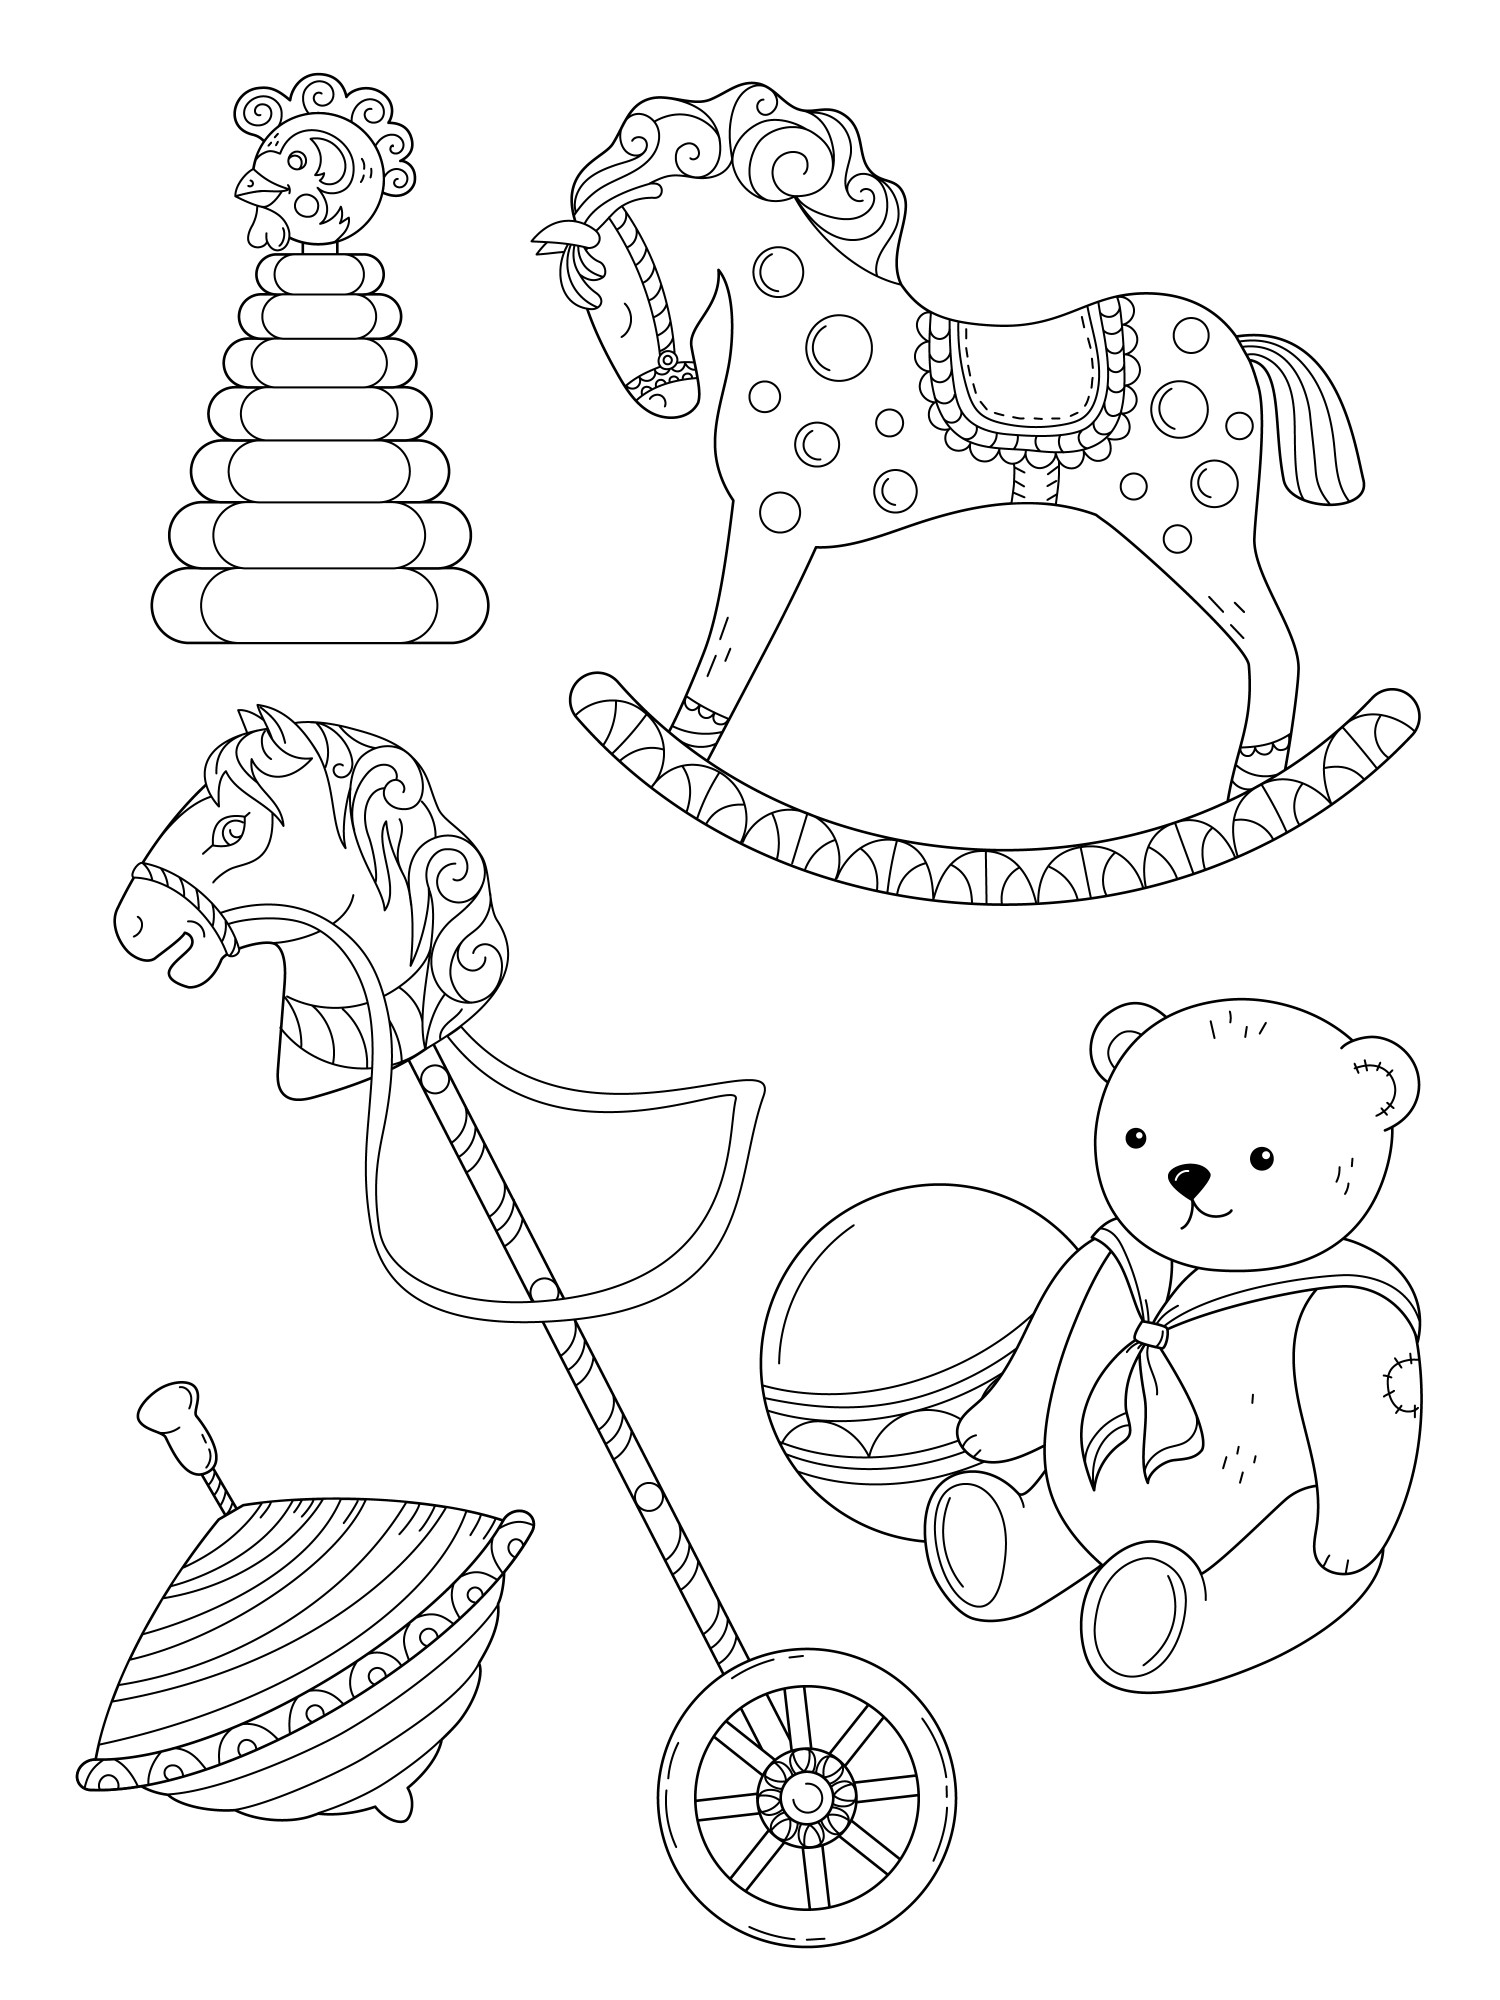 Раскраска для детей: детские игрушки: юла, конь с колесом, мишка с мячом, лошадка-качалка, пирамидка